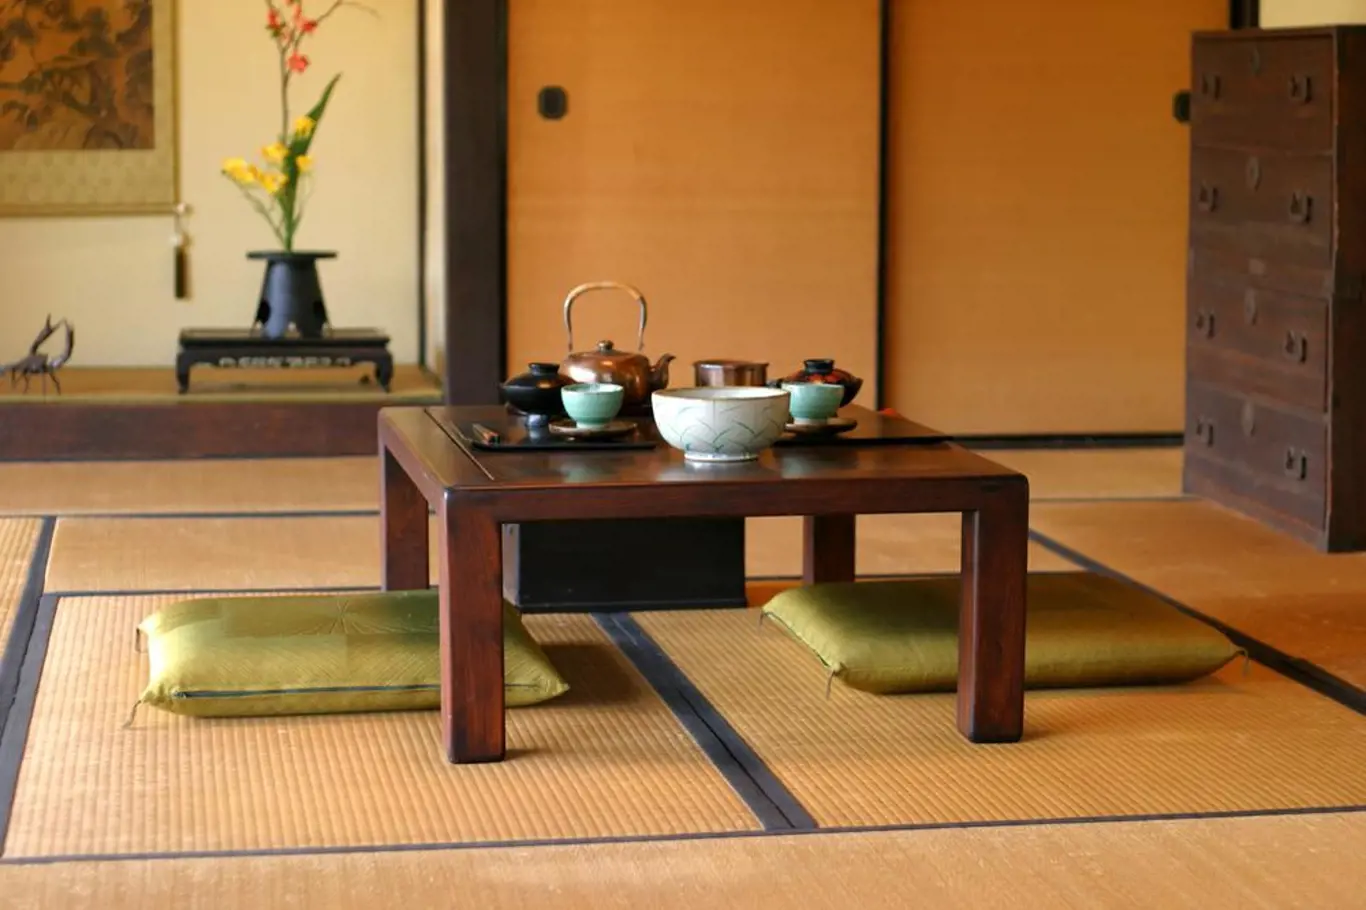 Čajový rituál je velmi oblíbeným a patří k tradiční japonské kultuře.